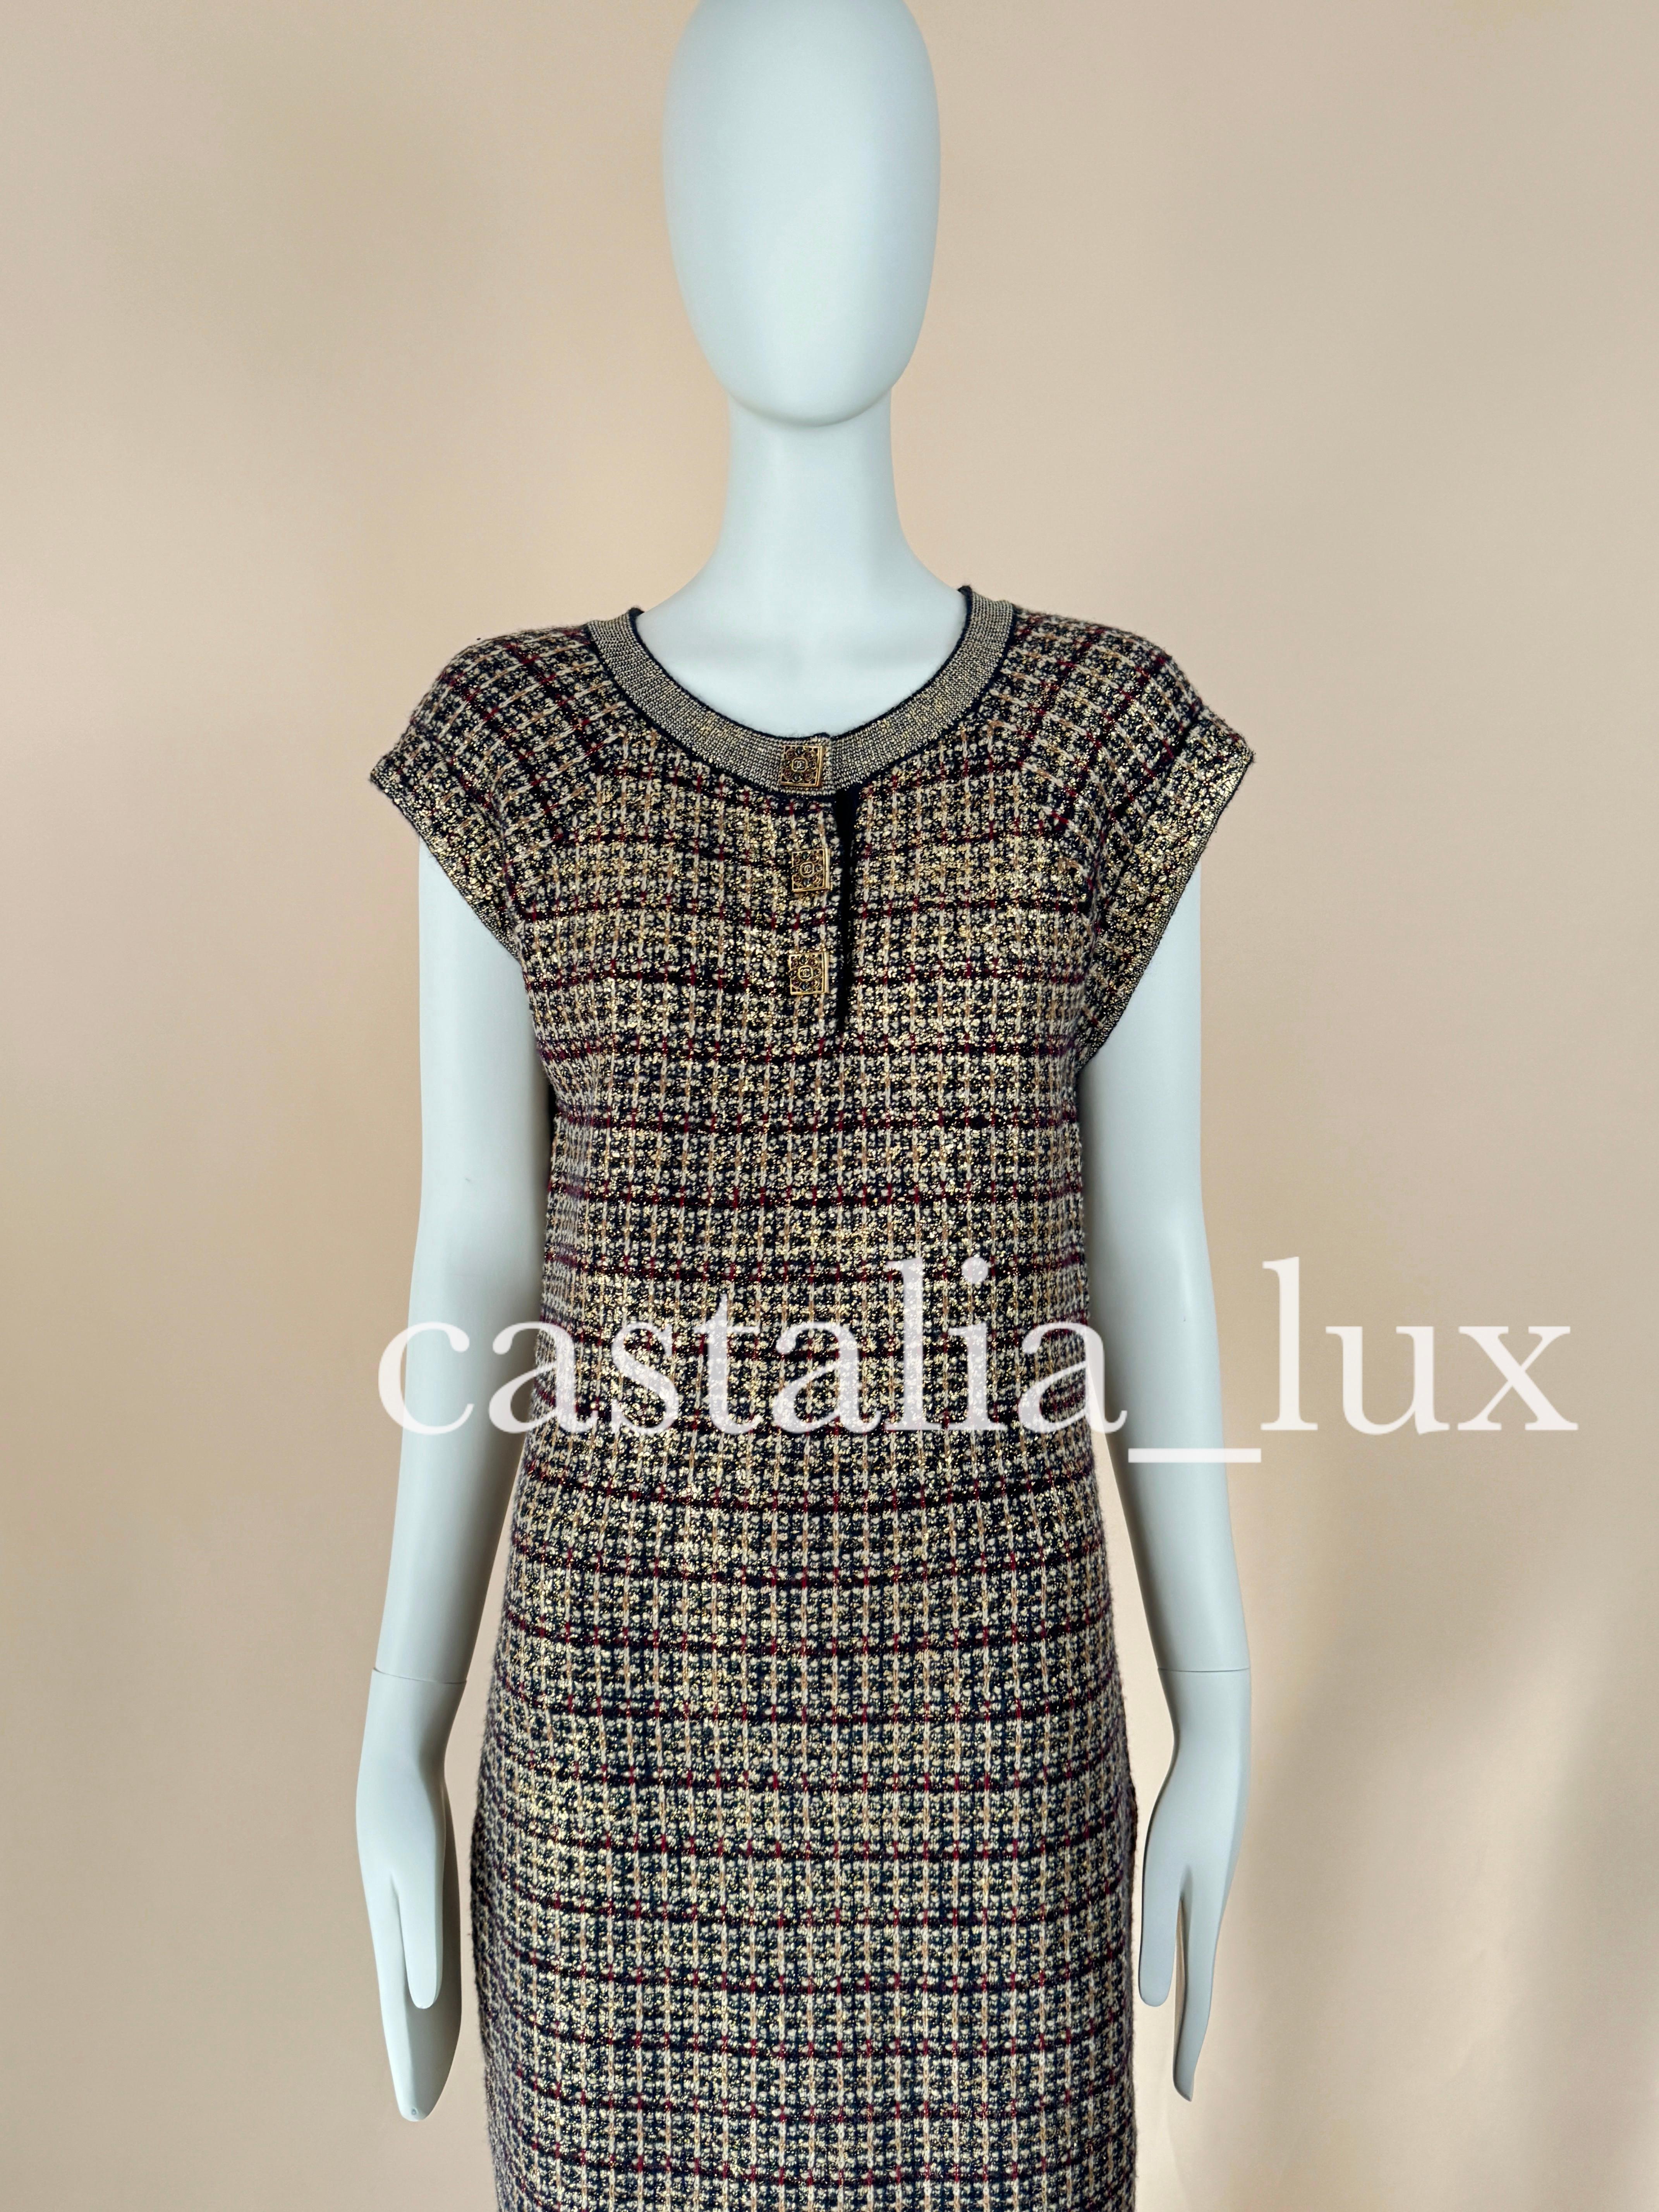 New Jewel Gripoix Buttons Paris / Byzance Dress For Sale 4